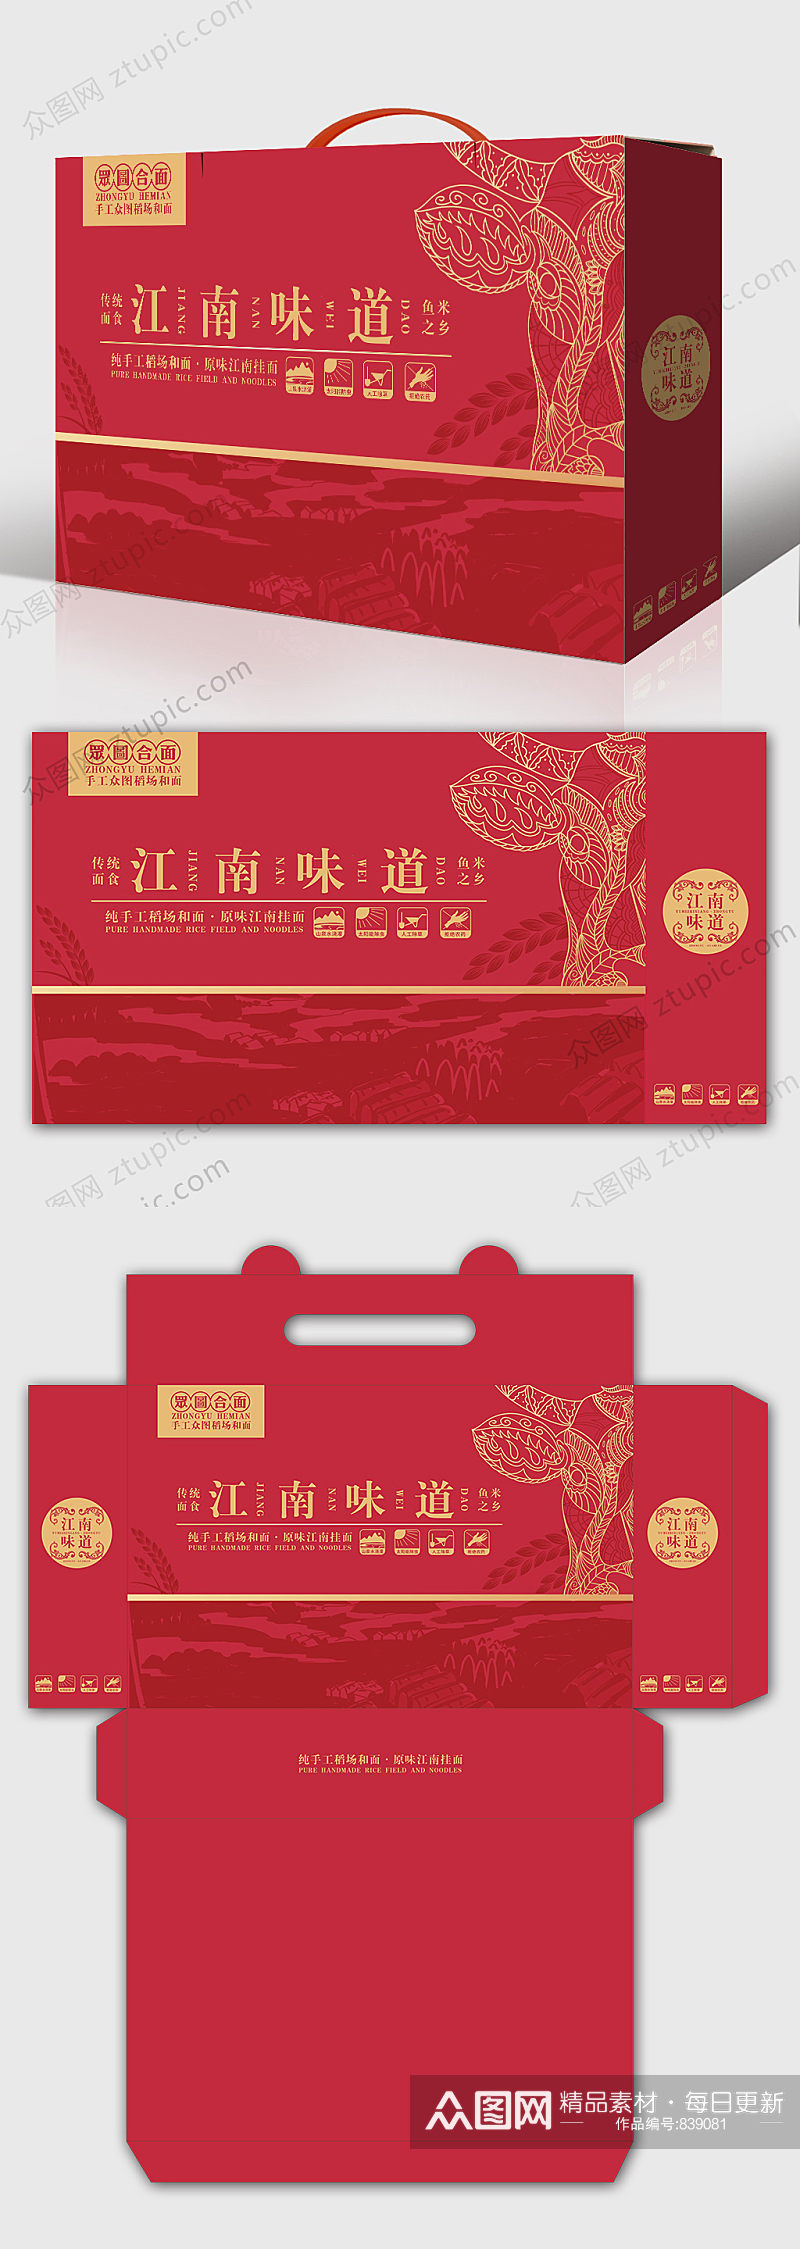 江南味道合面包装礼盒设计 年货包装素材